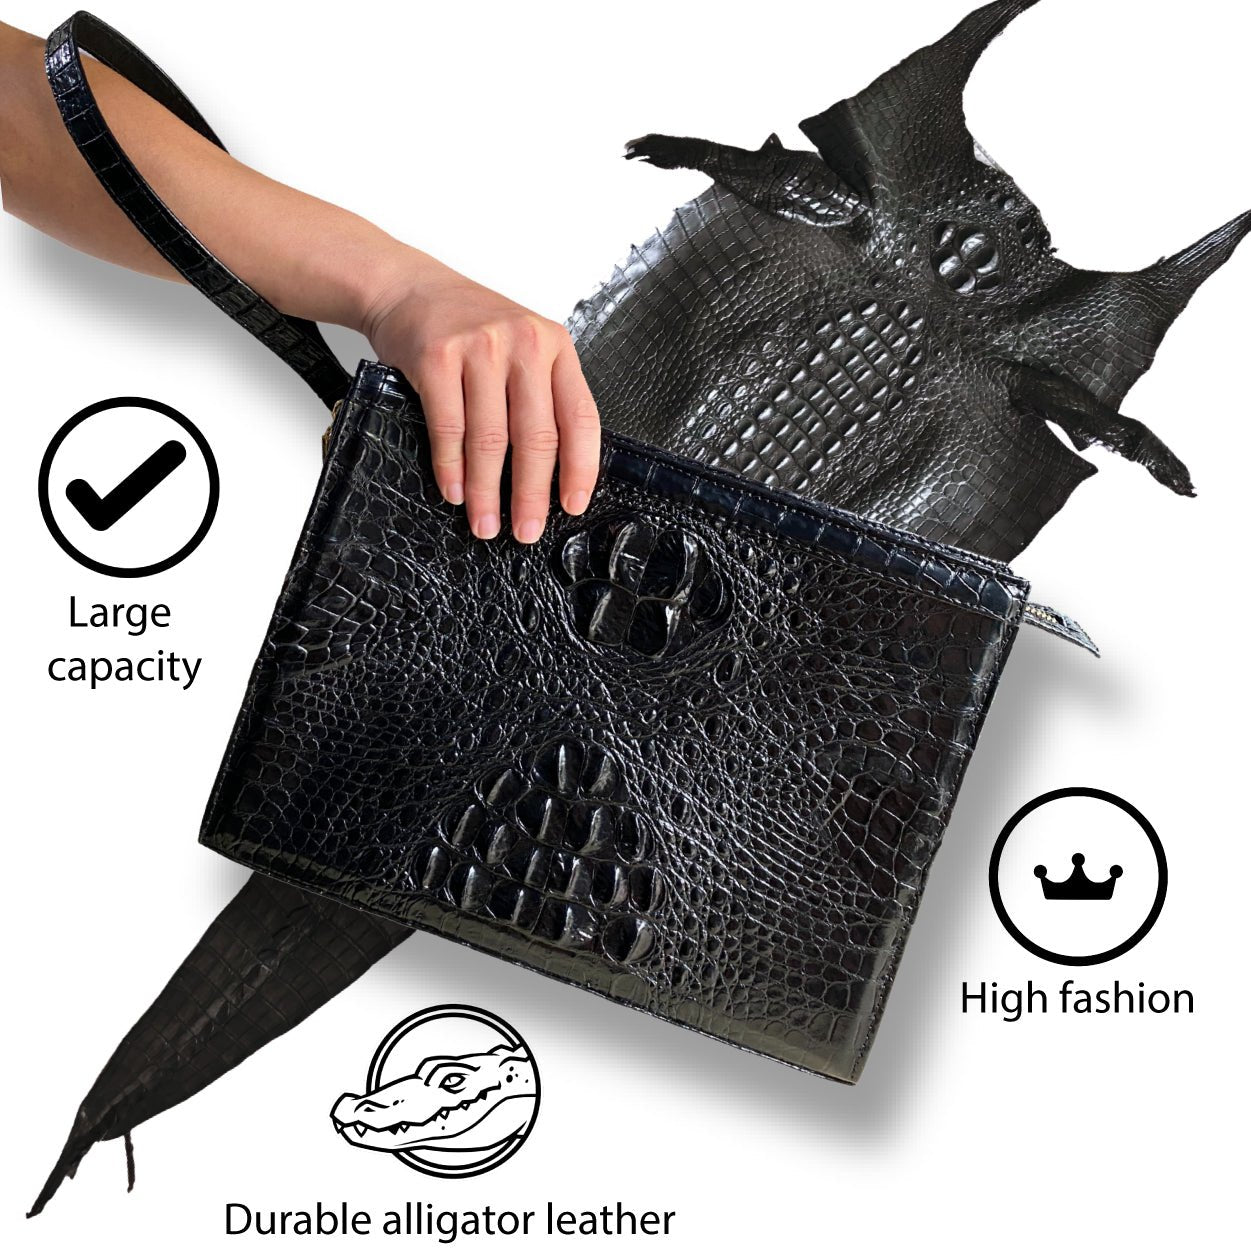 Grand Sac Crocodilien Mat - Men - Bags